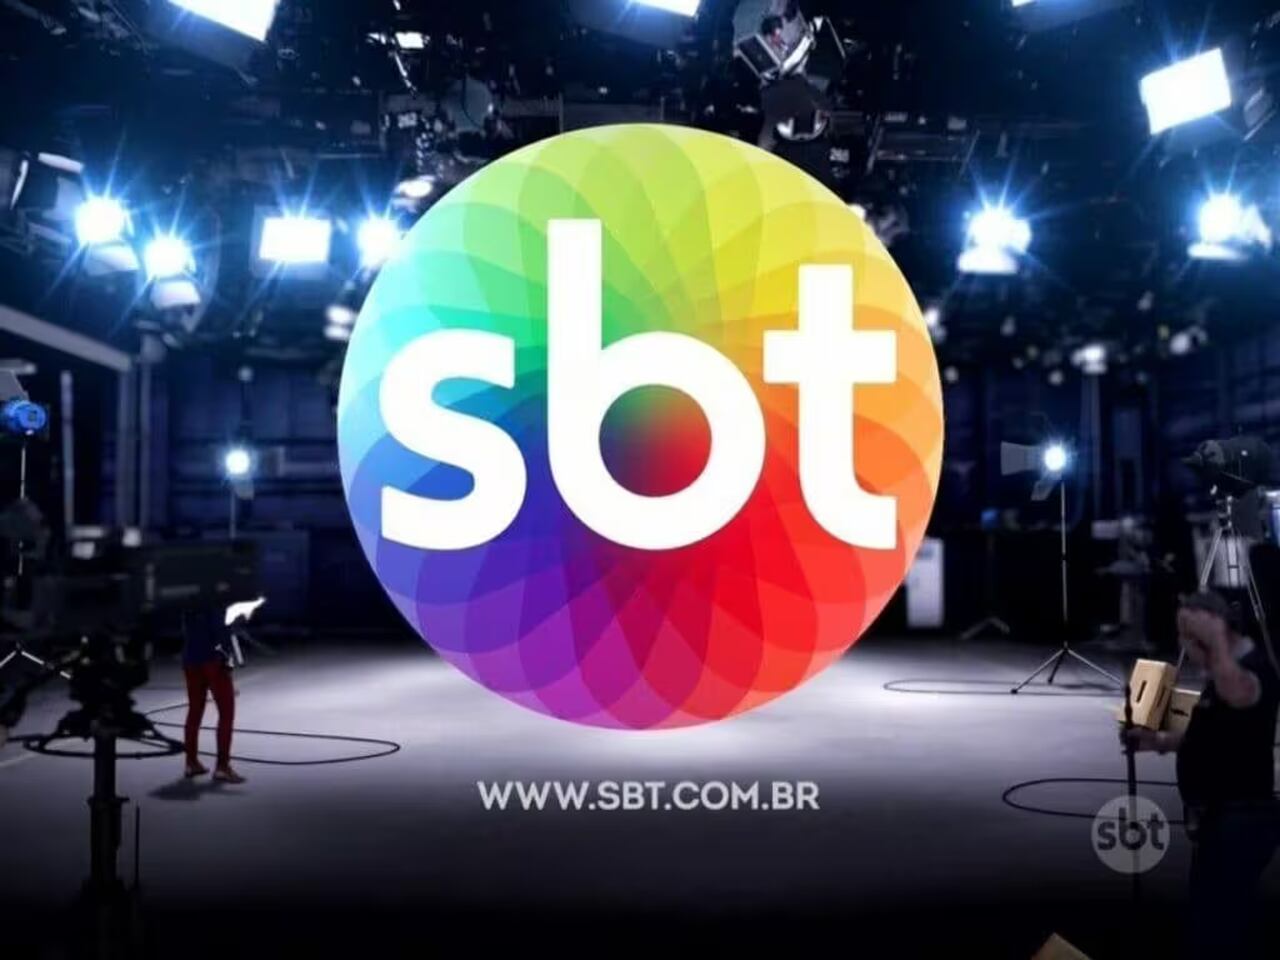 SBT Trabalhe Conosco: como enviar currículo para vagas abertas